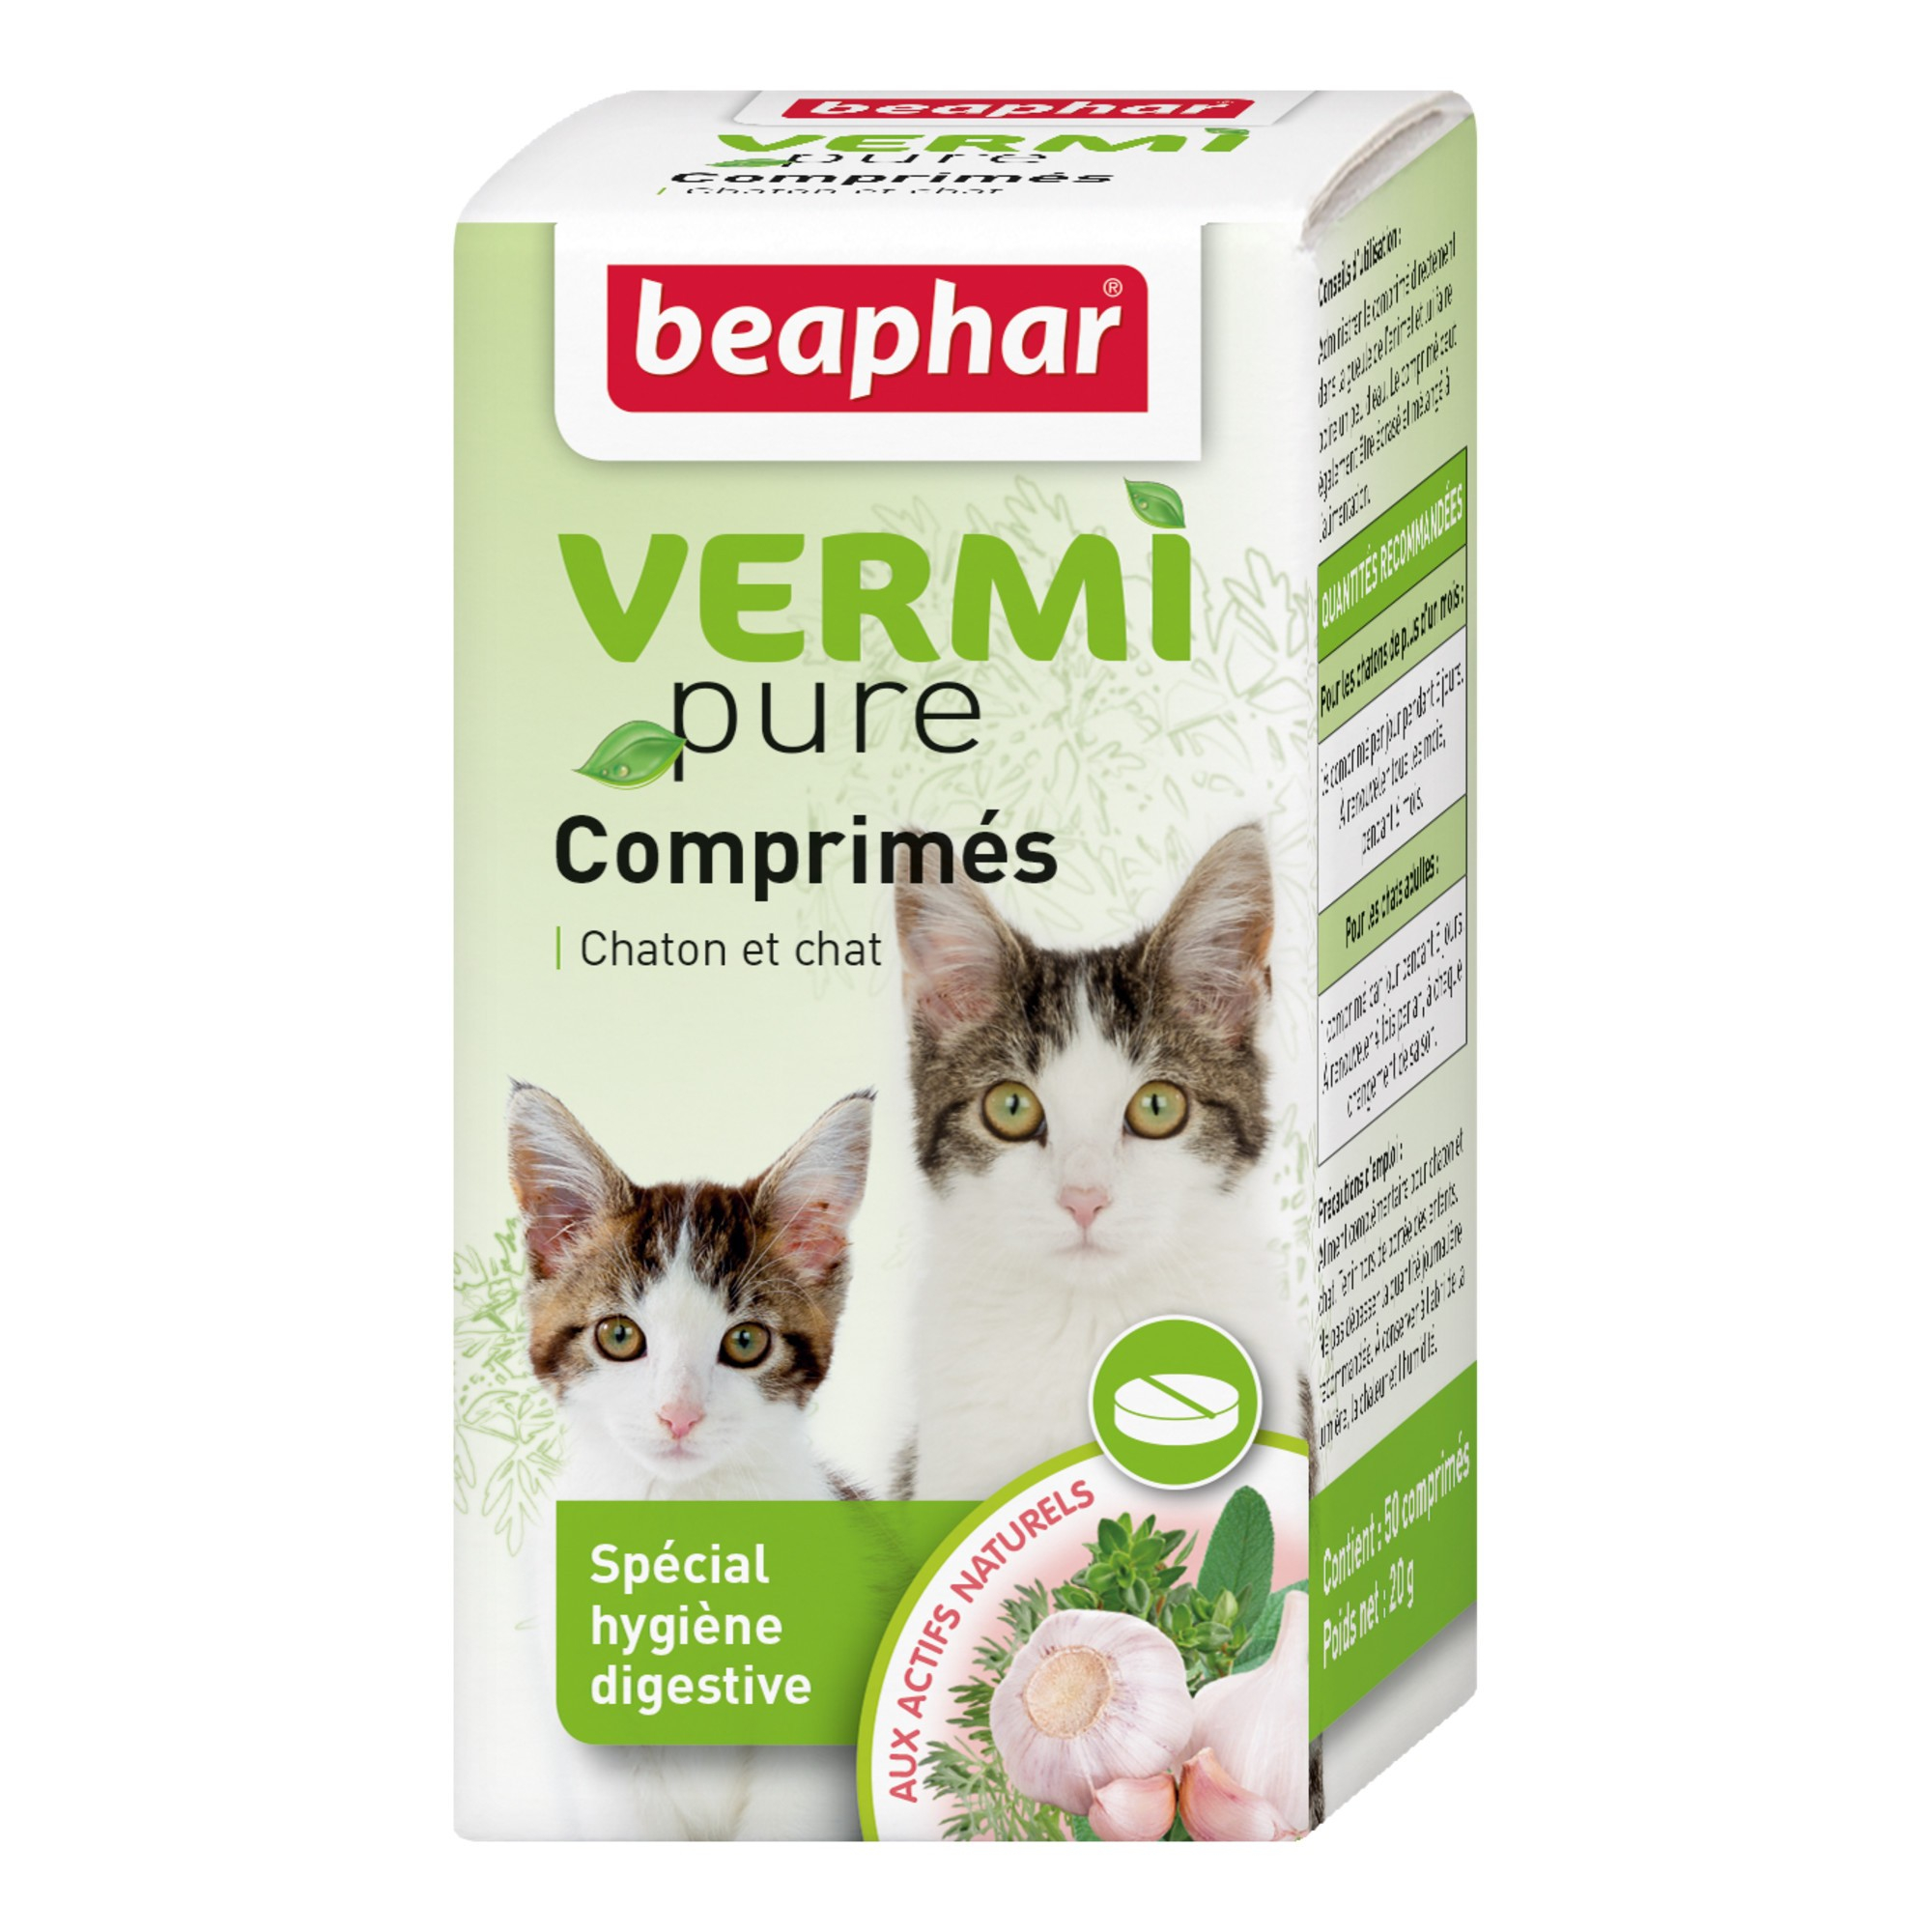 VERMIpure antiparasitario interno natural para gatos - comprimidos